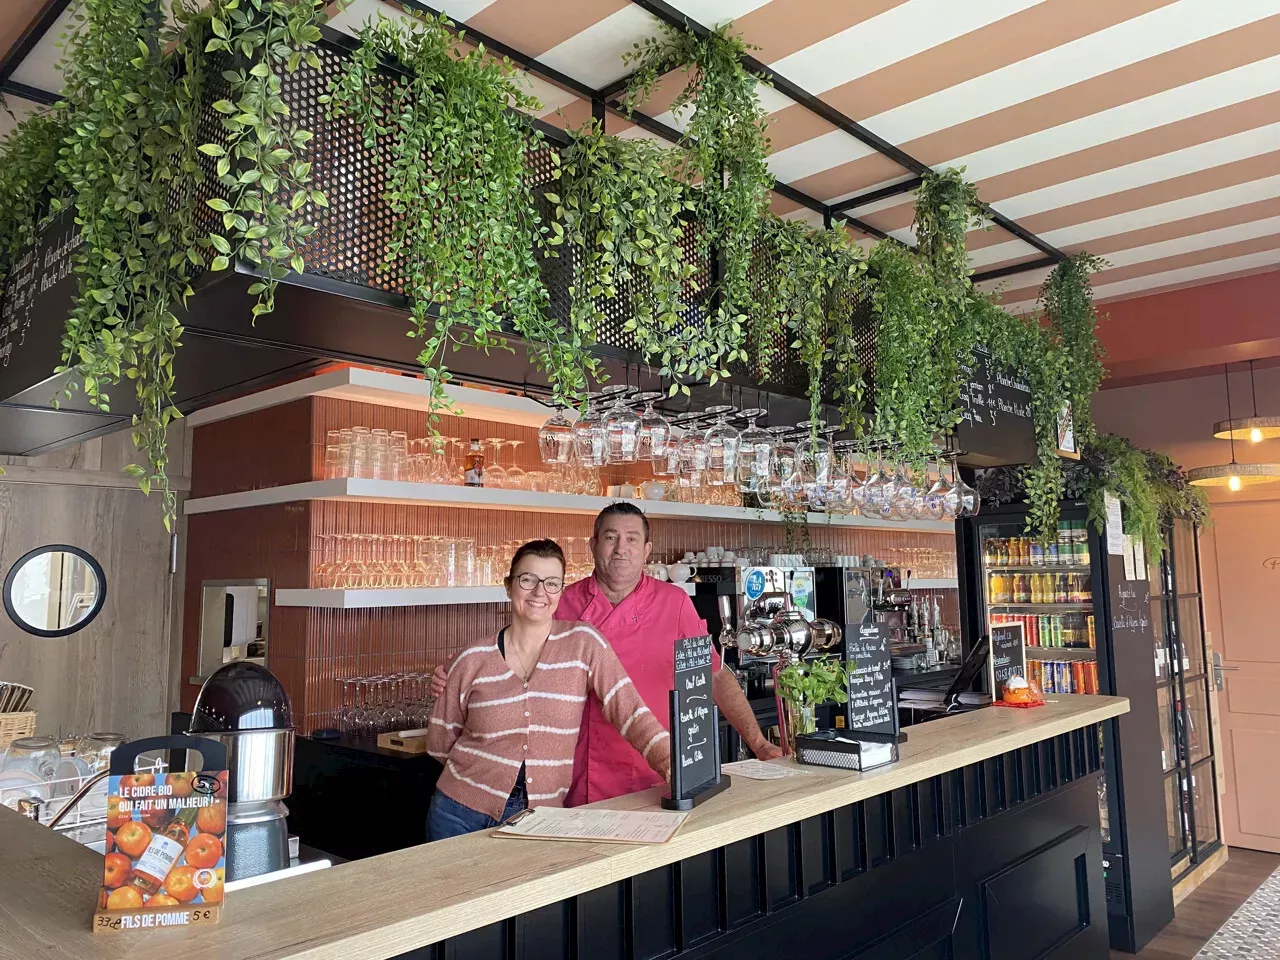 Sur l'île de Noirmoutier, un café-bistrot chic vient d'ouvrir | France ...